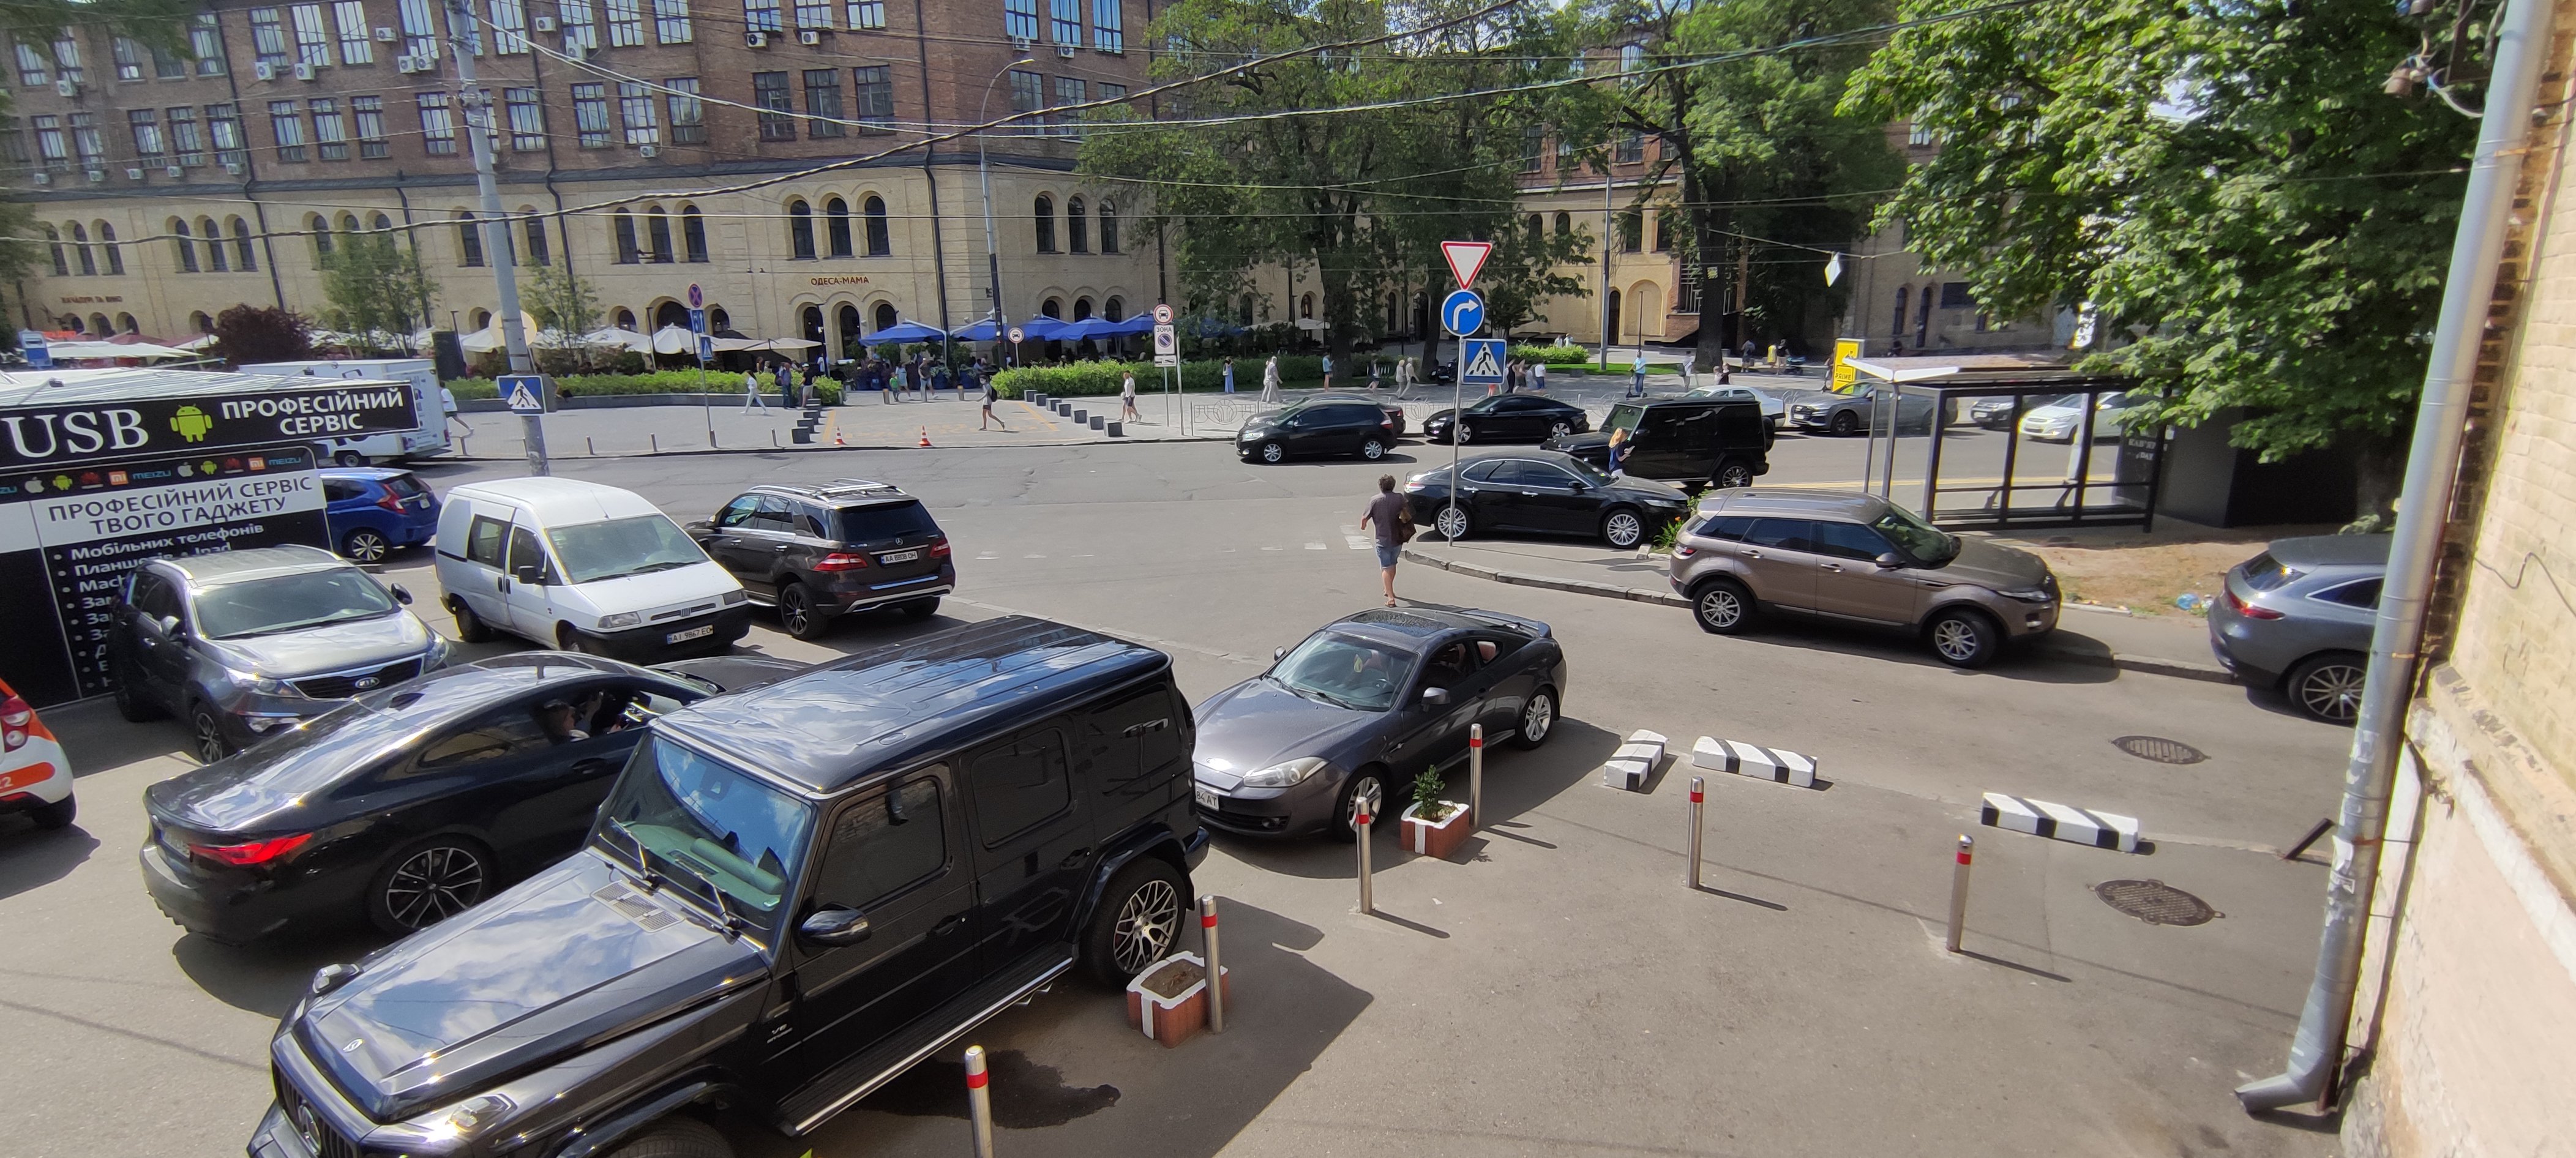 Хаос із паркуванням – типова картина для Києва, яка не вирішується комплексно. Хоч є місця і на платних паркінгах, багато людей кидають машини що ближче до ресторанів, щоб не ходити пішки міськими вулицями